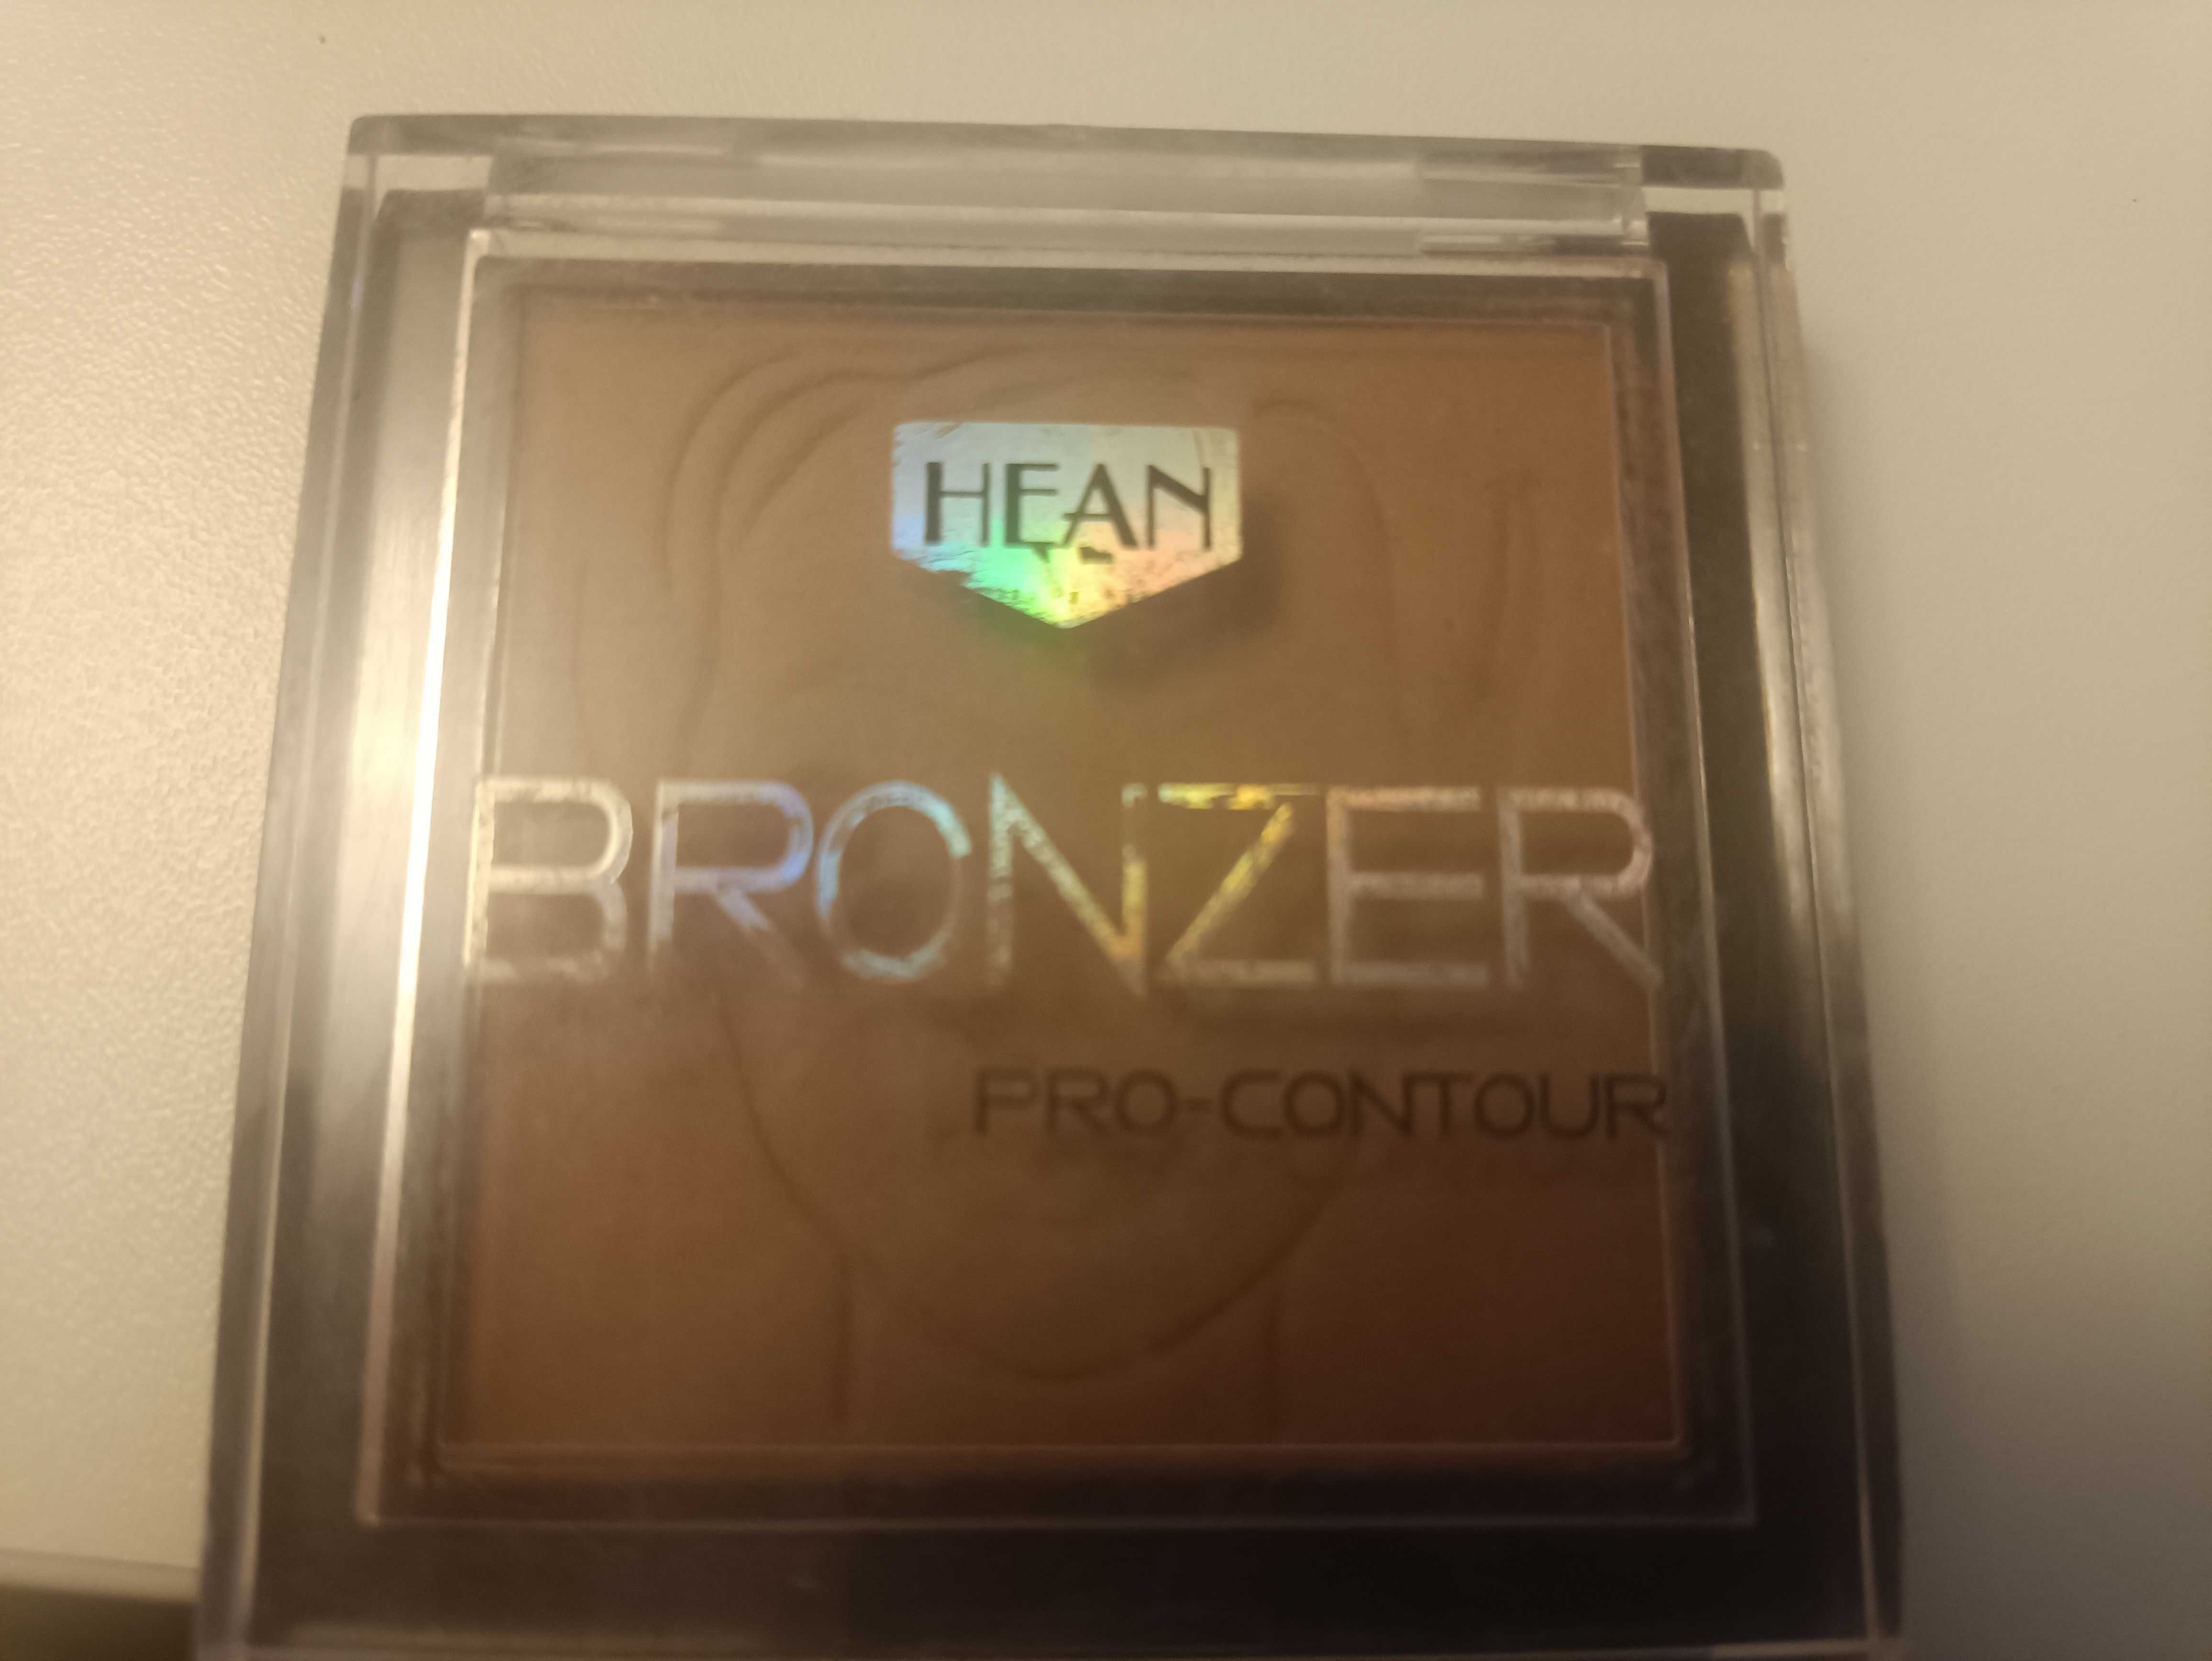 Hean bronzer pro-contour